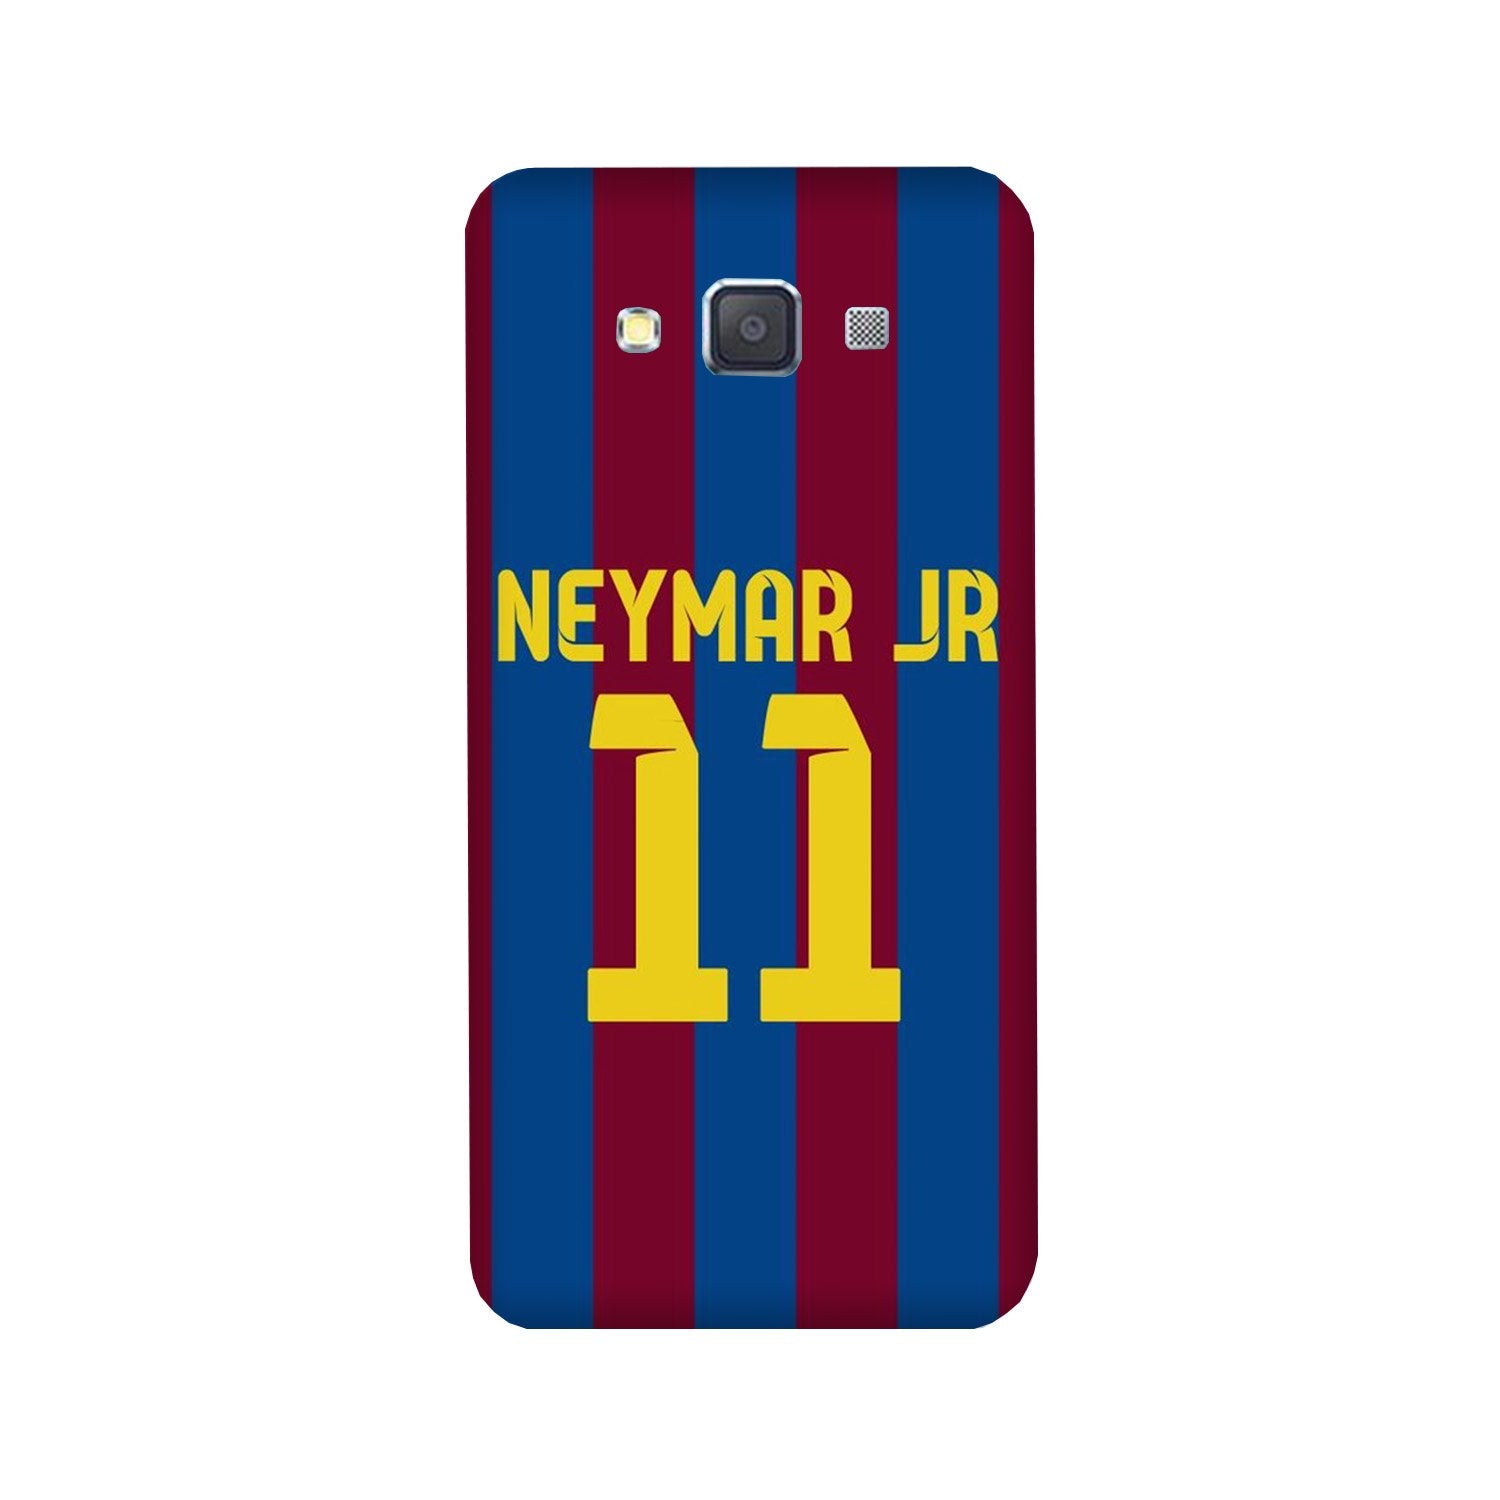 Neymar Jr Case for Galaxy J7 (2016)(Design - 162)